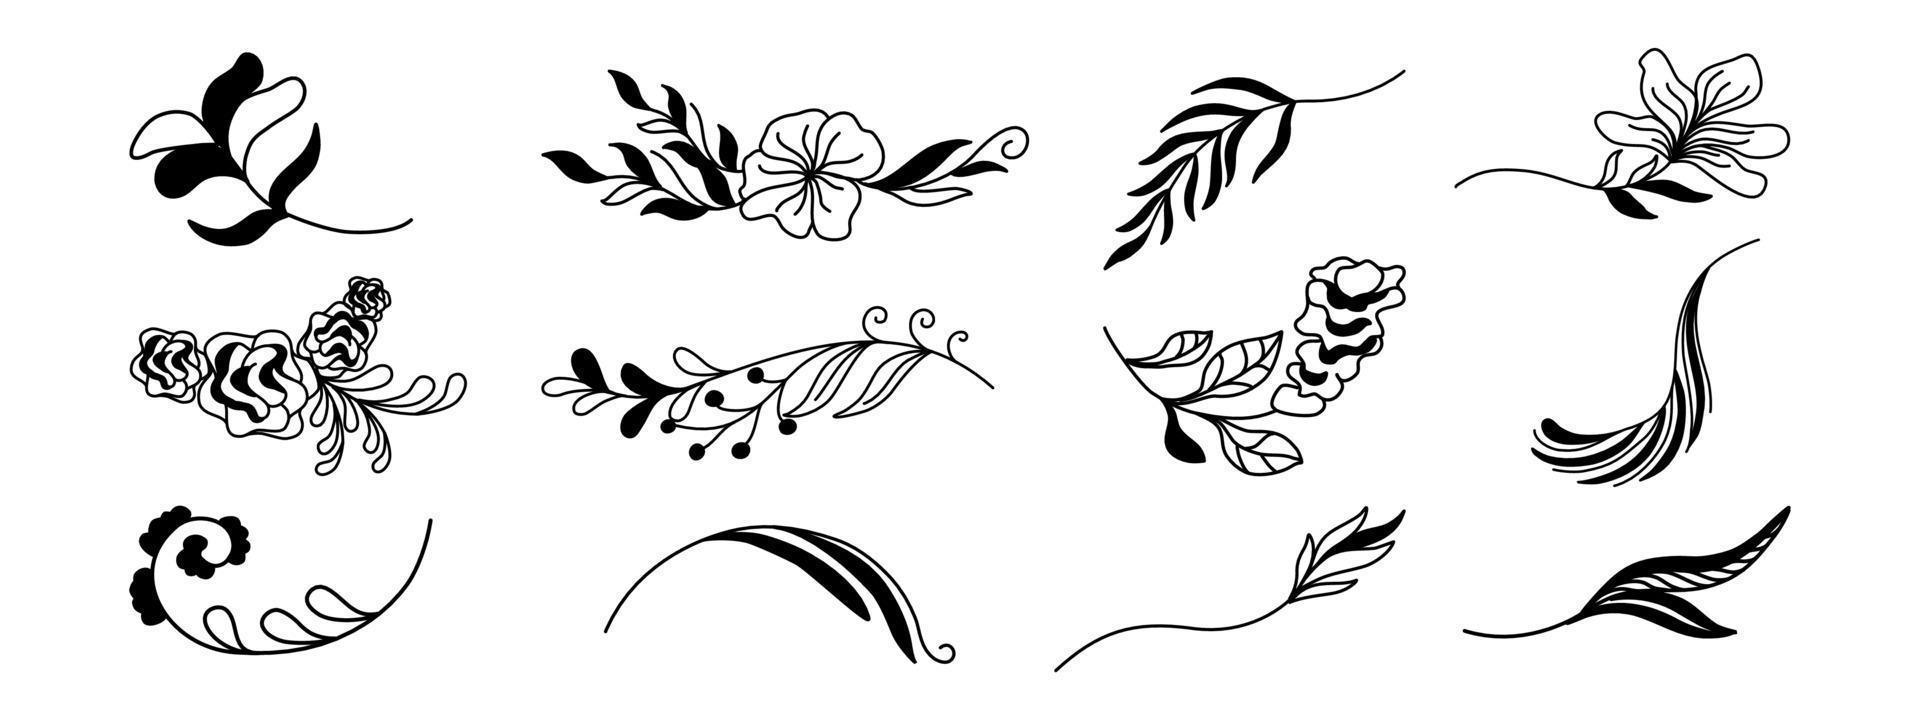 bloemen- en bladerenelementen ontworpen in zwarte tinten voor decoraties, kaarten, achtergronden, kaders, randen, papierpatronen, stoffenpatronen, lentethema-decoraties, scrapbooking en meer. vector